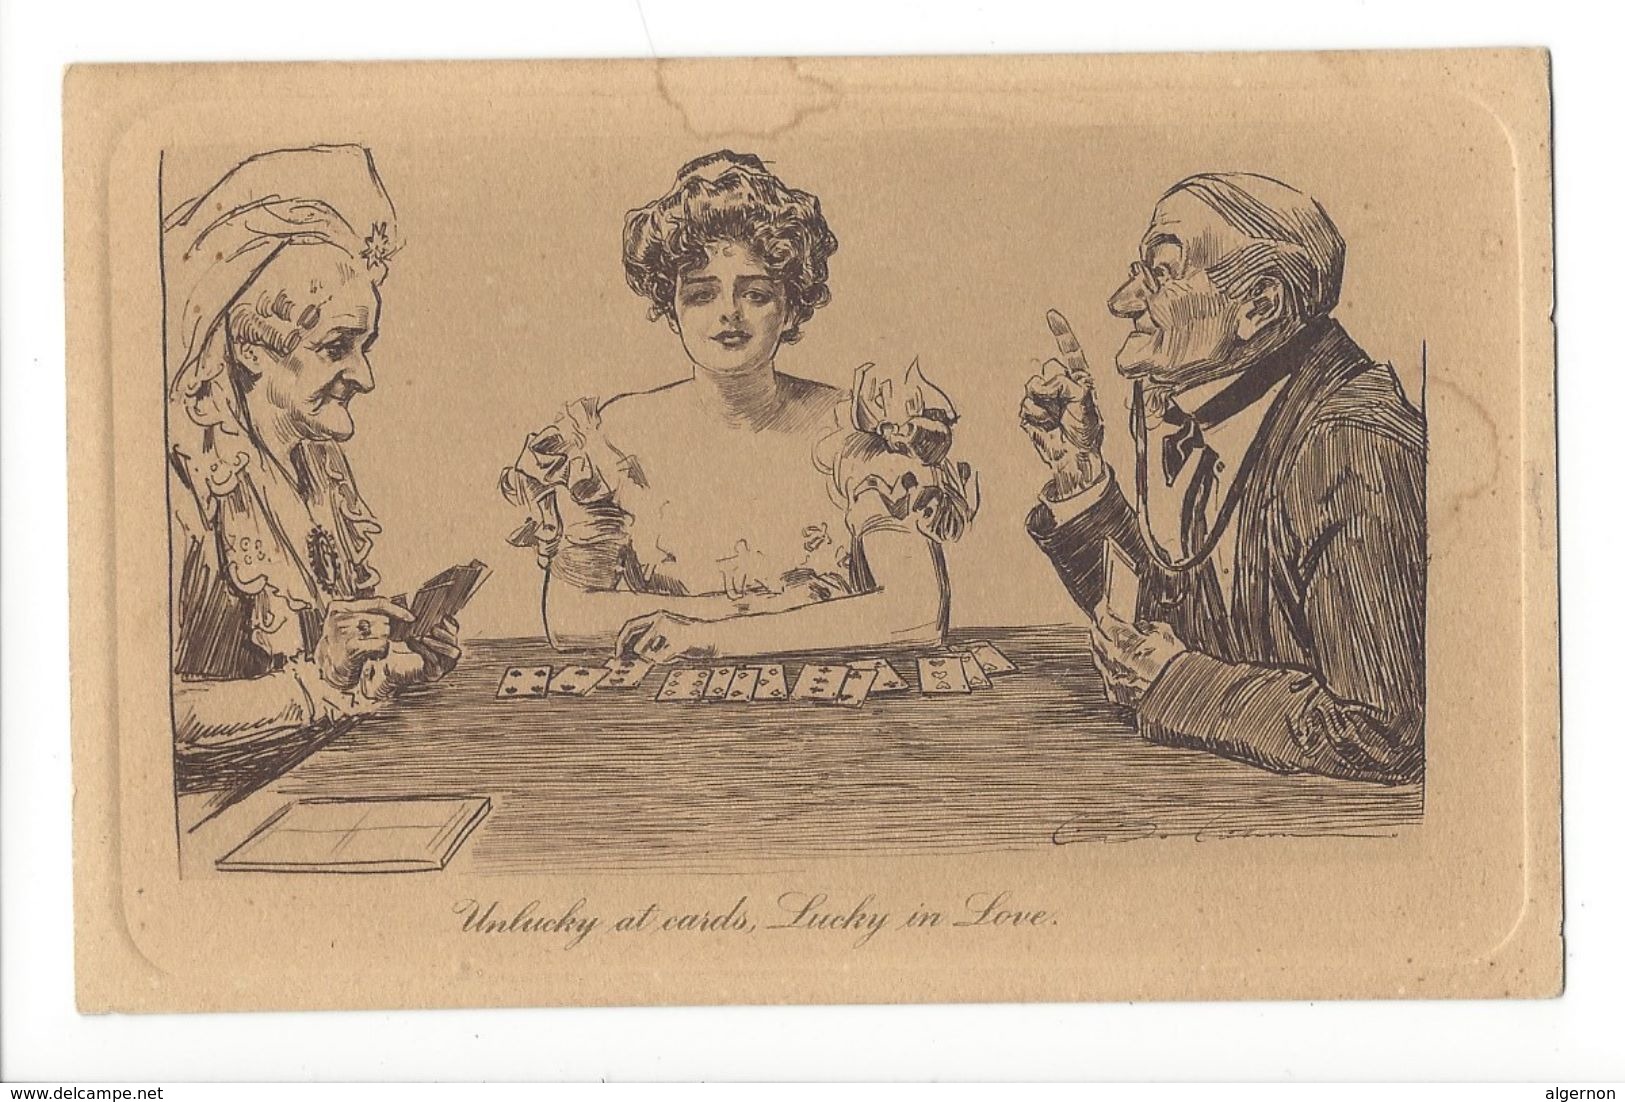 17201 - Unlucky At Cards Lucky In Love Malheureux Aux Cartes Heureux En Amour - Cartes à Jouer